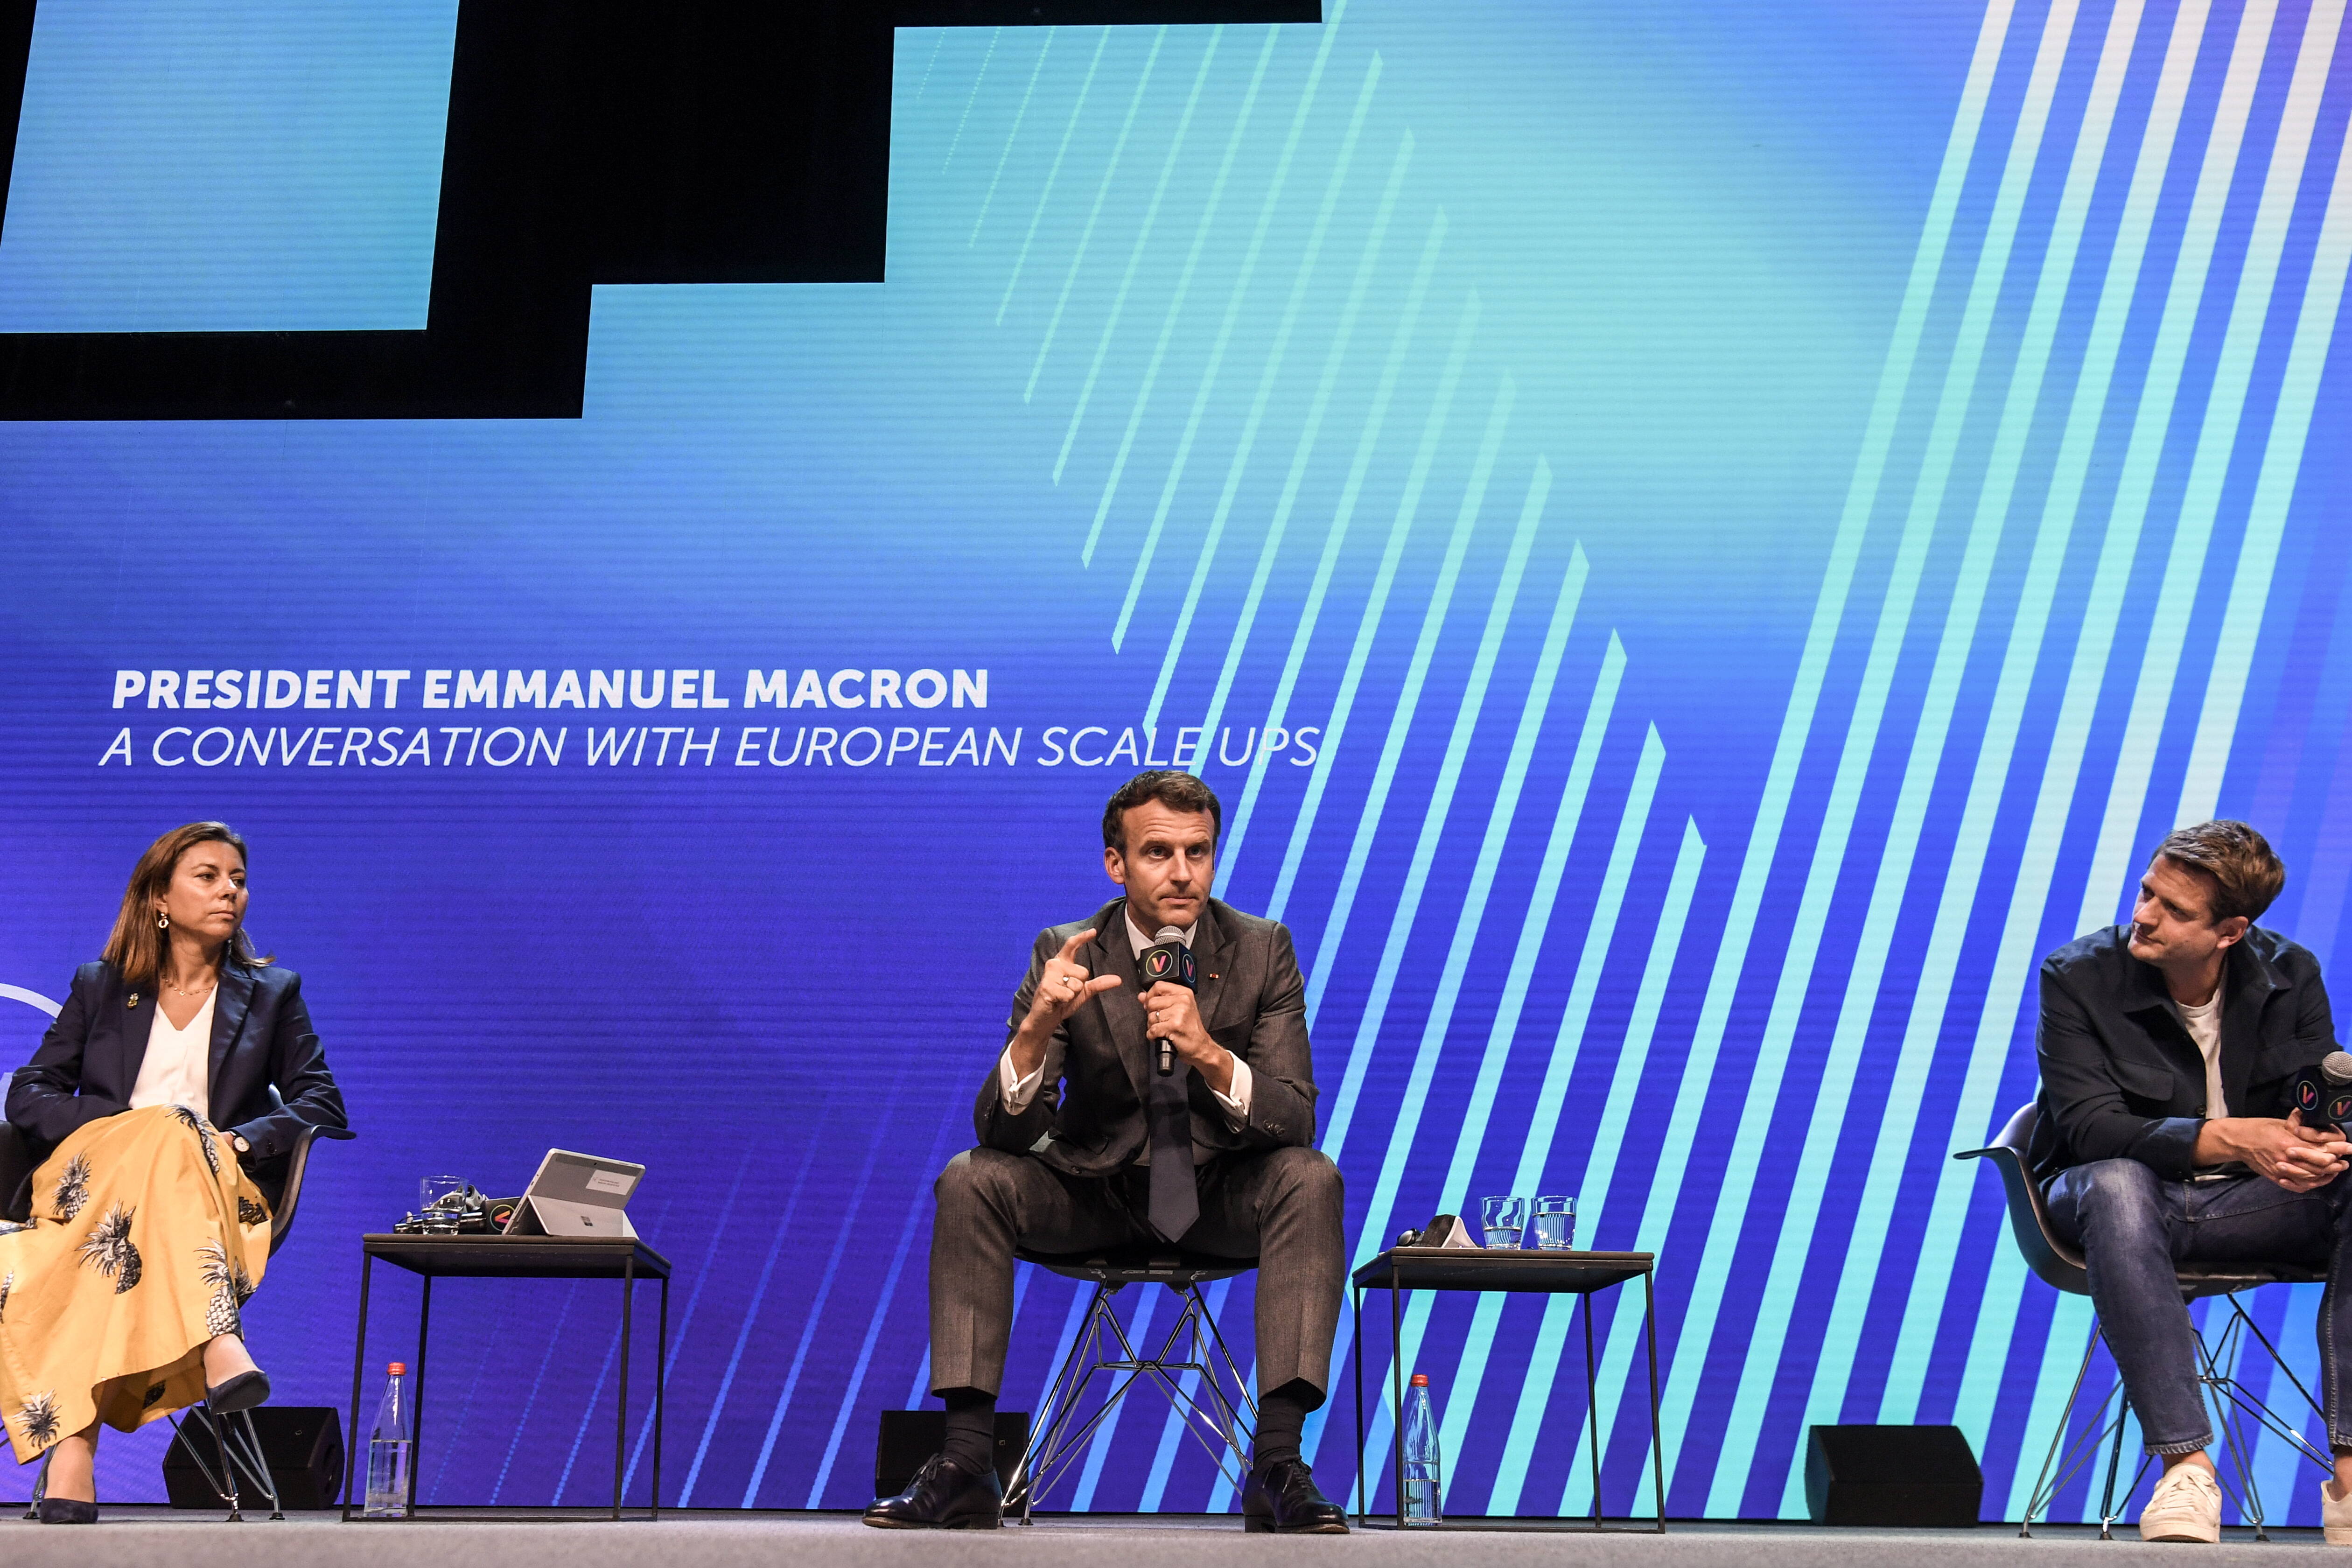 Prezydent Francji Emmanuel Macron (w środku) przemawia w towarzystwie Any Maiques, dyrektor generalnej Neuroelectrics, firmy mającej na celu zmianę sposobu interakcji z mózgiem, oraz Sebastiana Siemiatkowskiego, dyrektora generalnego i współzałożyciela dostawcy płatności internetowych KLARNA